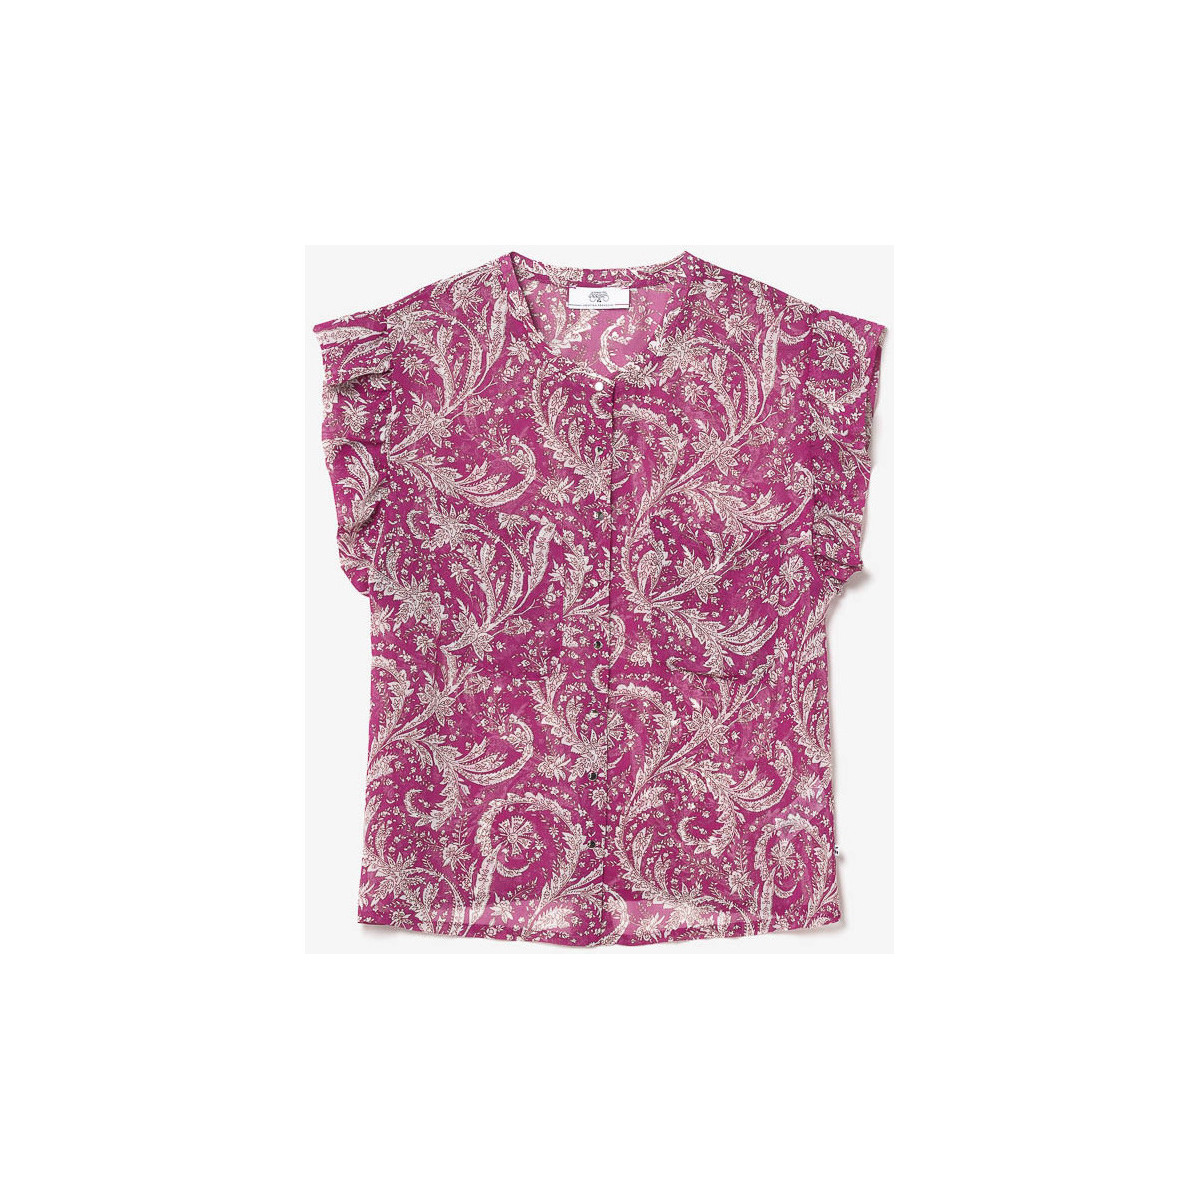 textil Mujer Camisetas sin mangas Le Temps des Cerises Top SURI Rosa